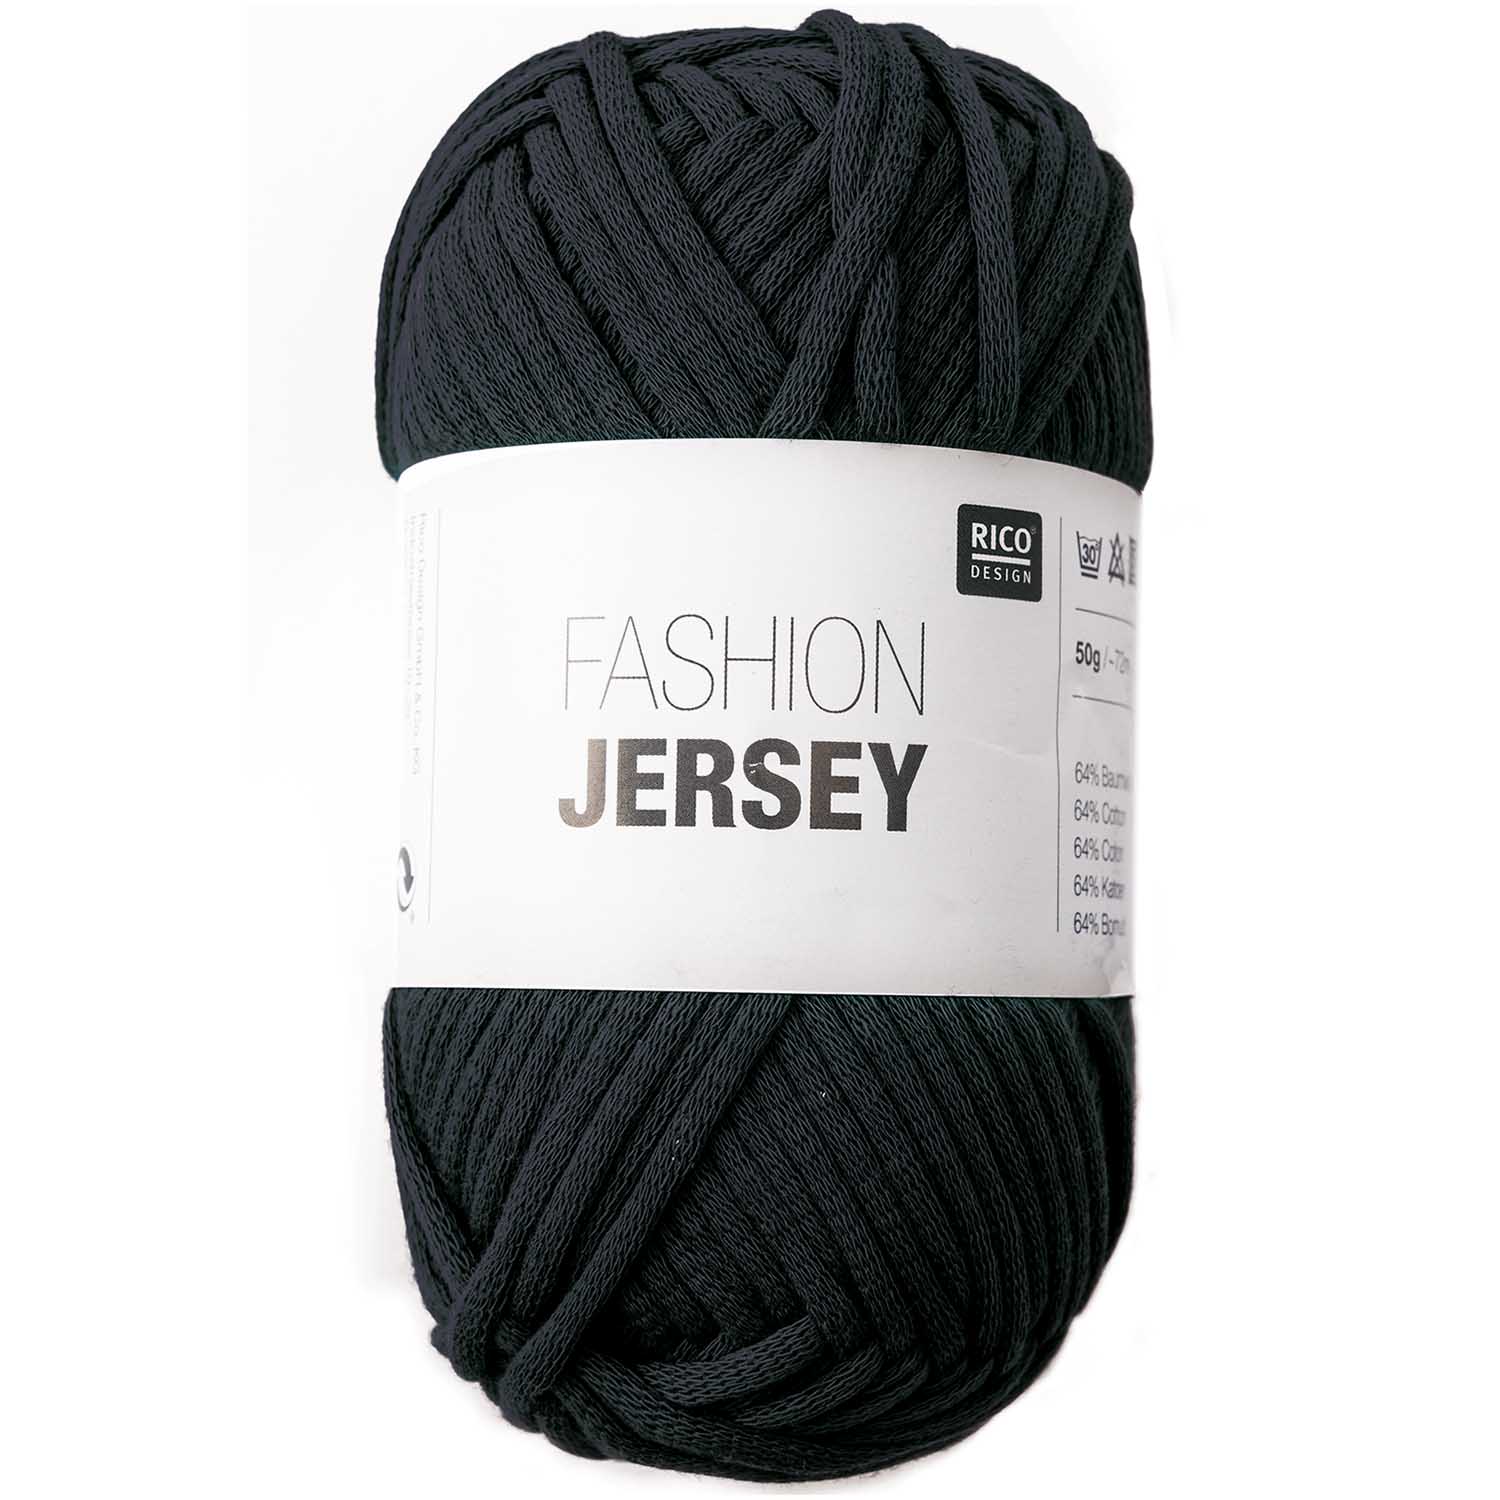 Fashion Jersey Wolle, 50g/72m